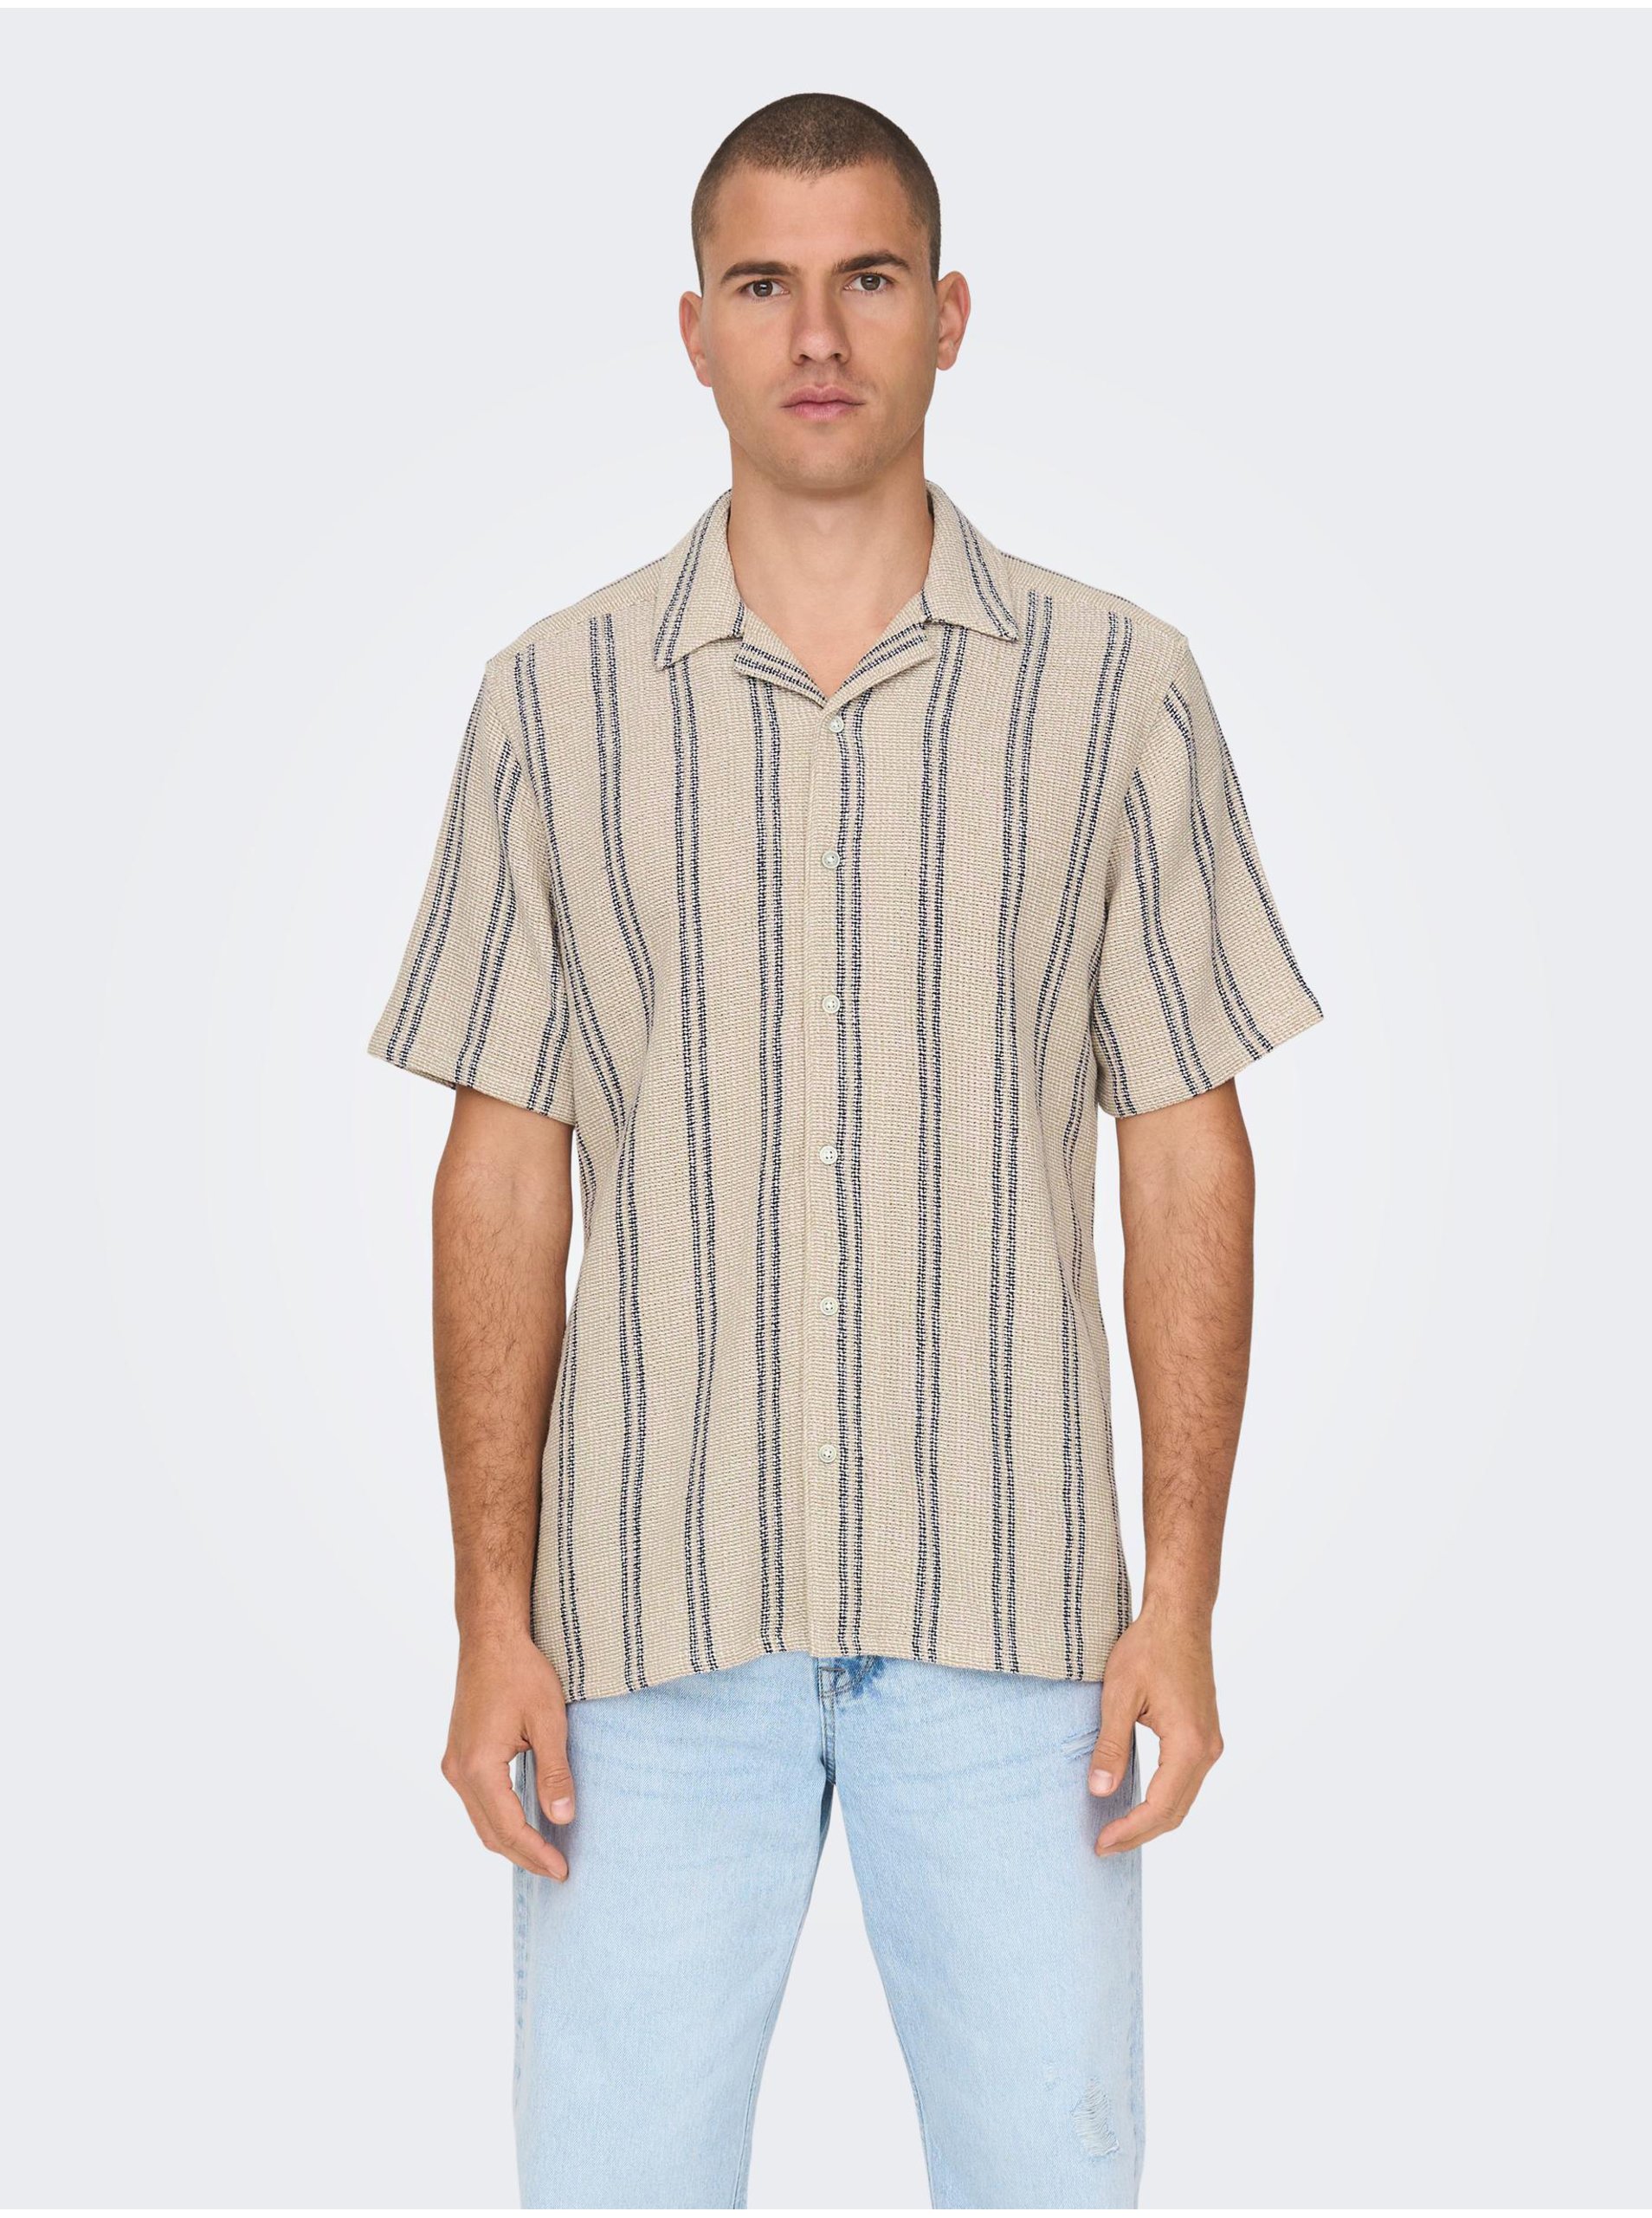 Levně Béžová pánská pruhovaná košile s krátkým rukávem ONLY & SONS Trev - Pánské